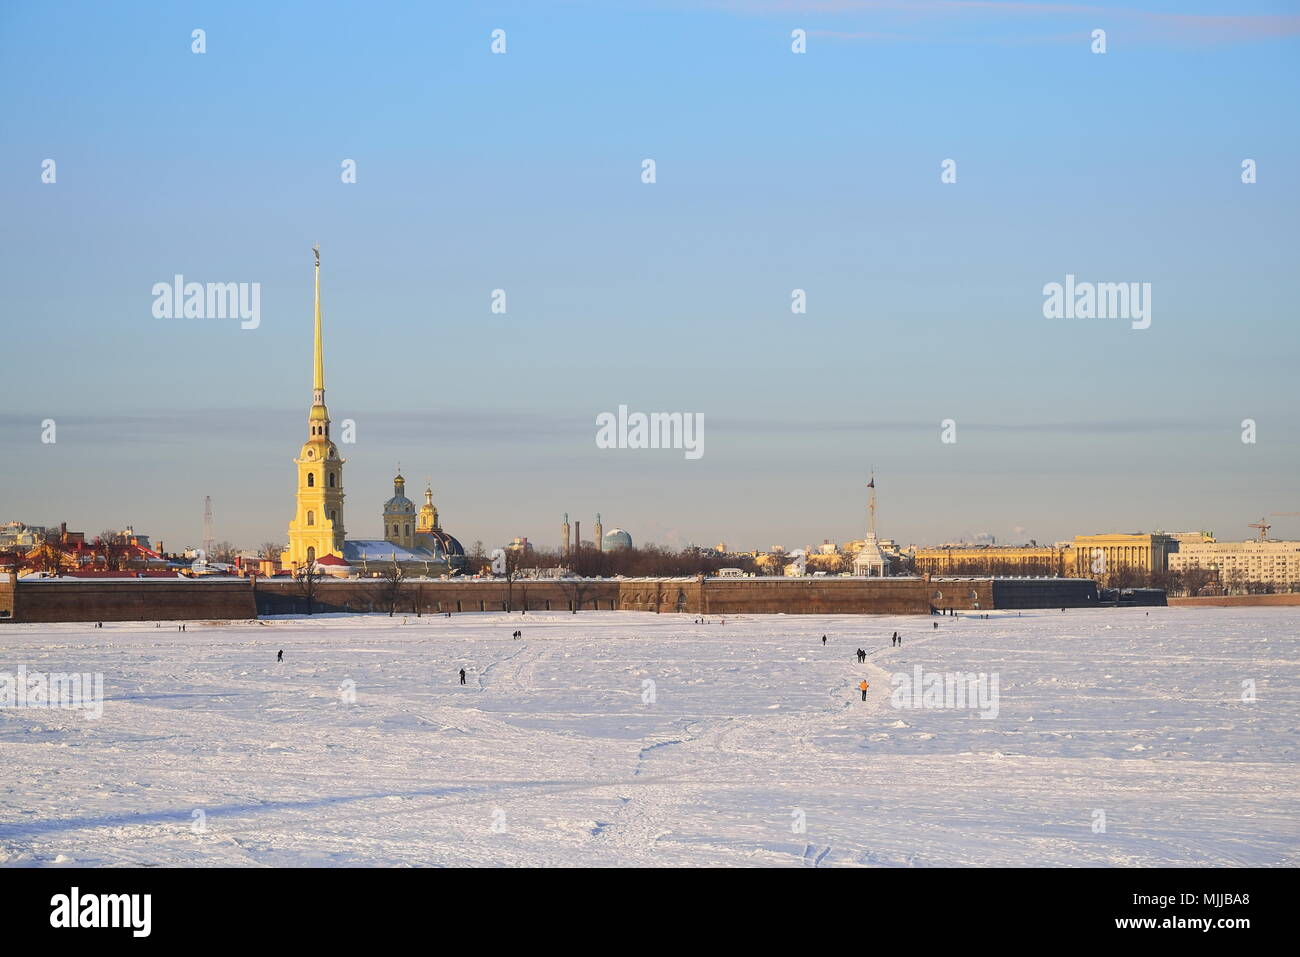 Les gens marchent sur la glace de la rivière Neva en face de la forteresse Pierre et Paul sur une journée ensoleillée à Saint-Pétersbourg Banque D'Images